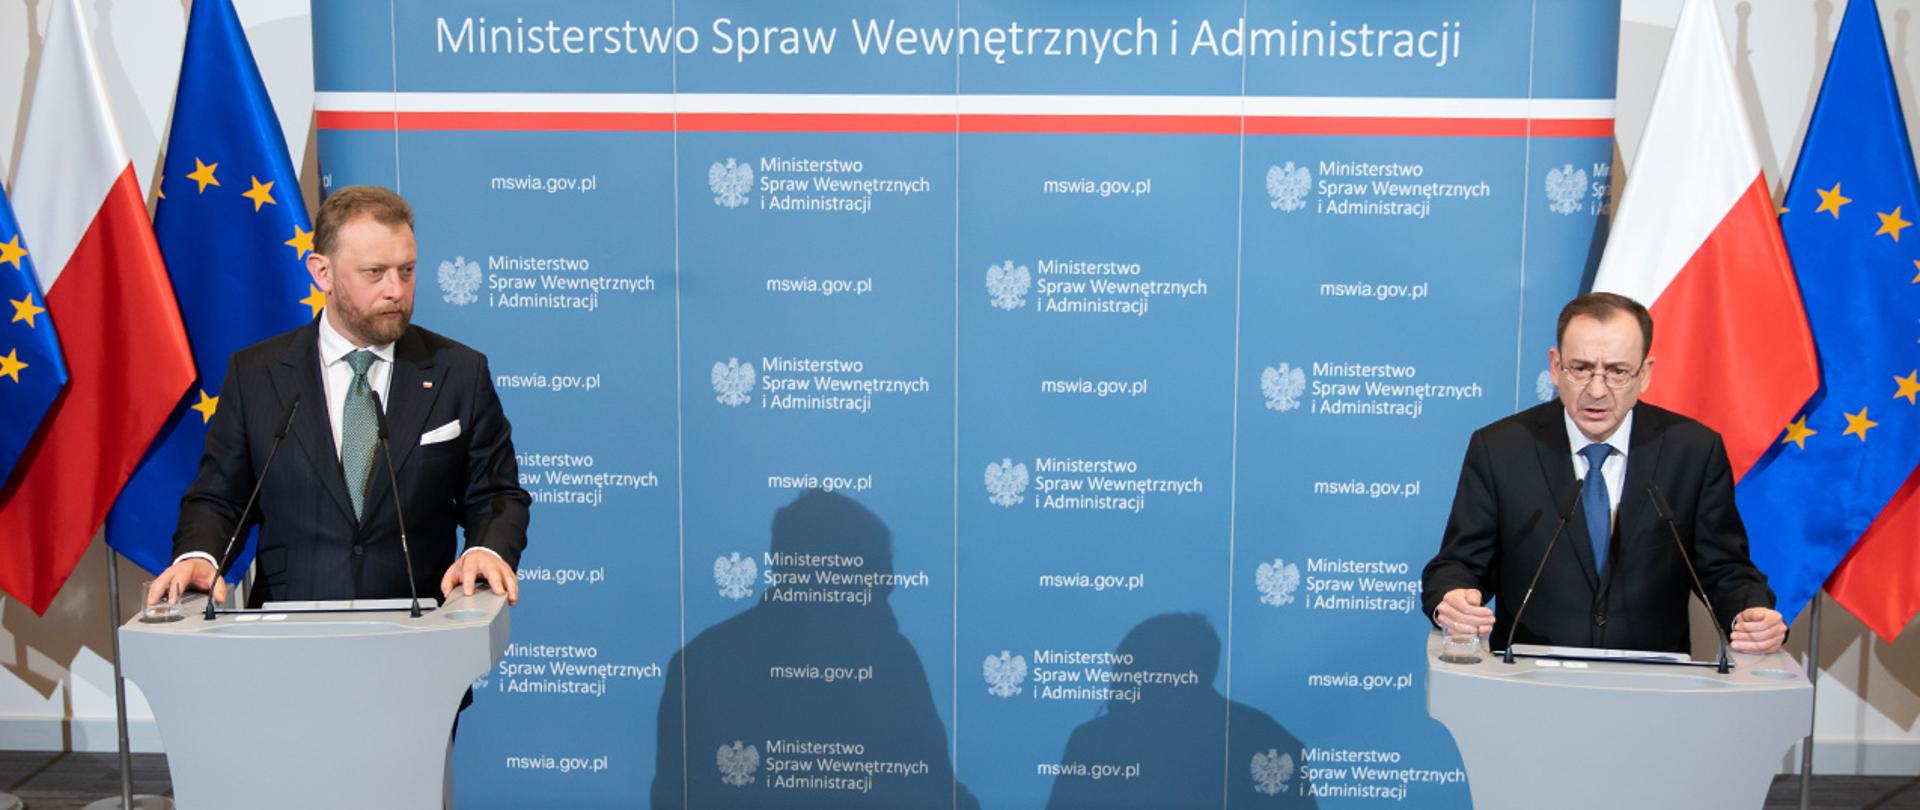 Na zdjęciu widać przemawiającego ministra Mariusza Kamińskiego oraz stojącego obok ministra Łukasza Szumowskiego podczas konferencji prasowej w MSWiA. Obaj stoją na tle ścianki MSWiA i flag Polski i UE.